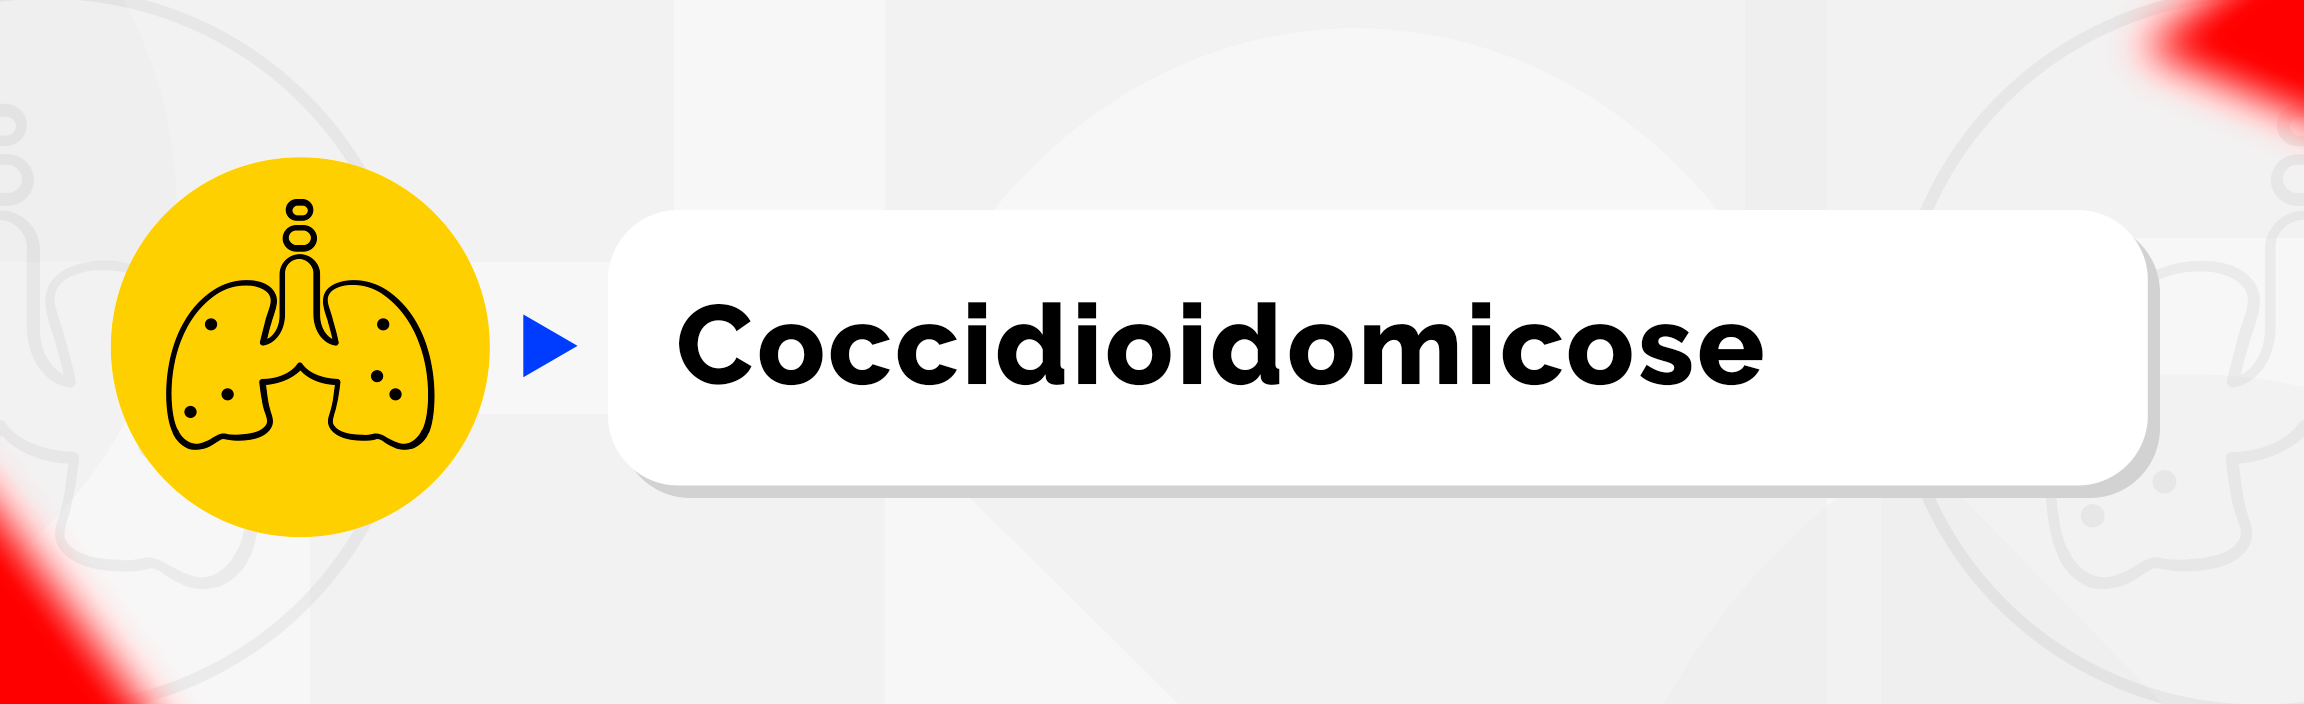 Coccidioidomicose